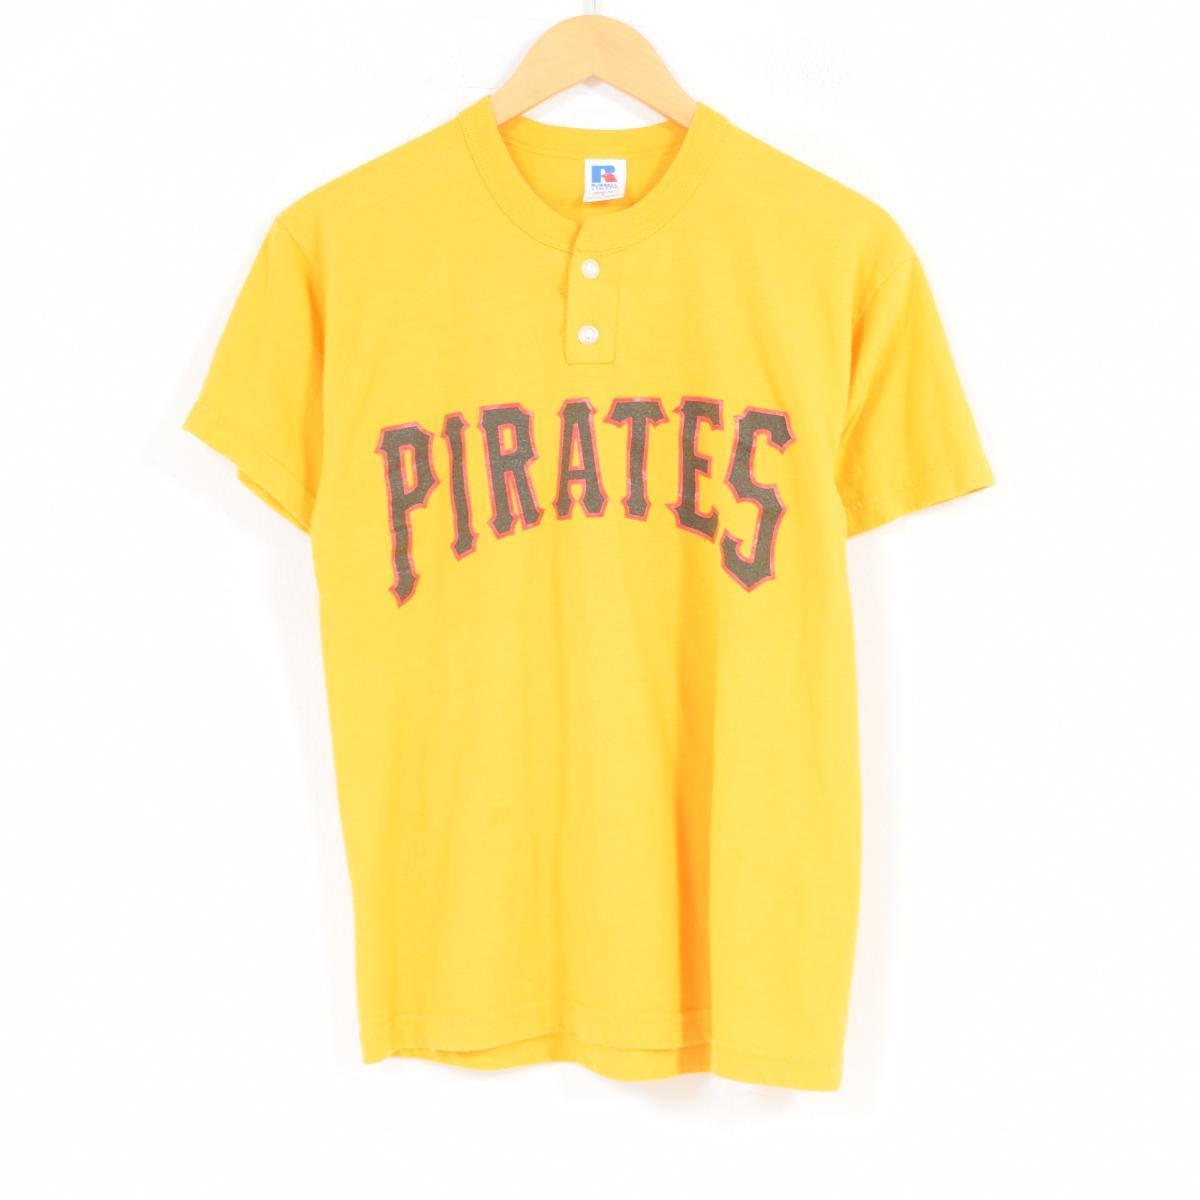 vintage pittsburgh pirates shirt